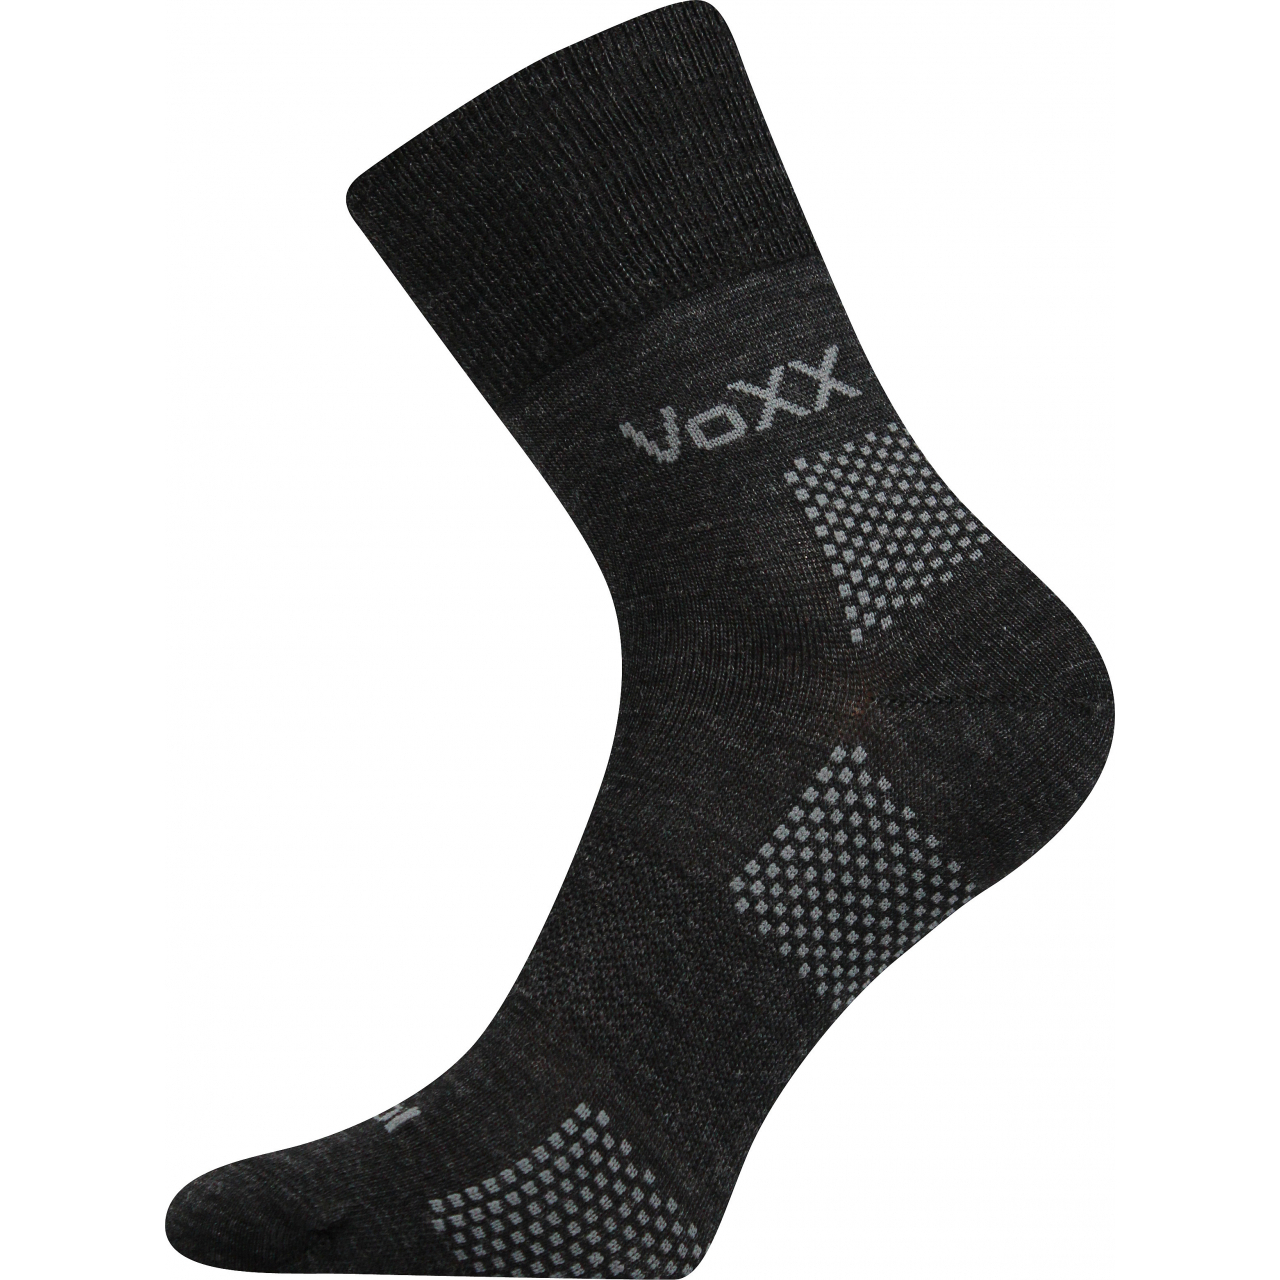 Ponožky funkční unisex Voxx Orionis ThermoCool - tmavě šedé, 43-46